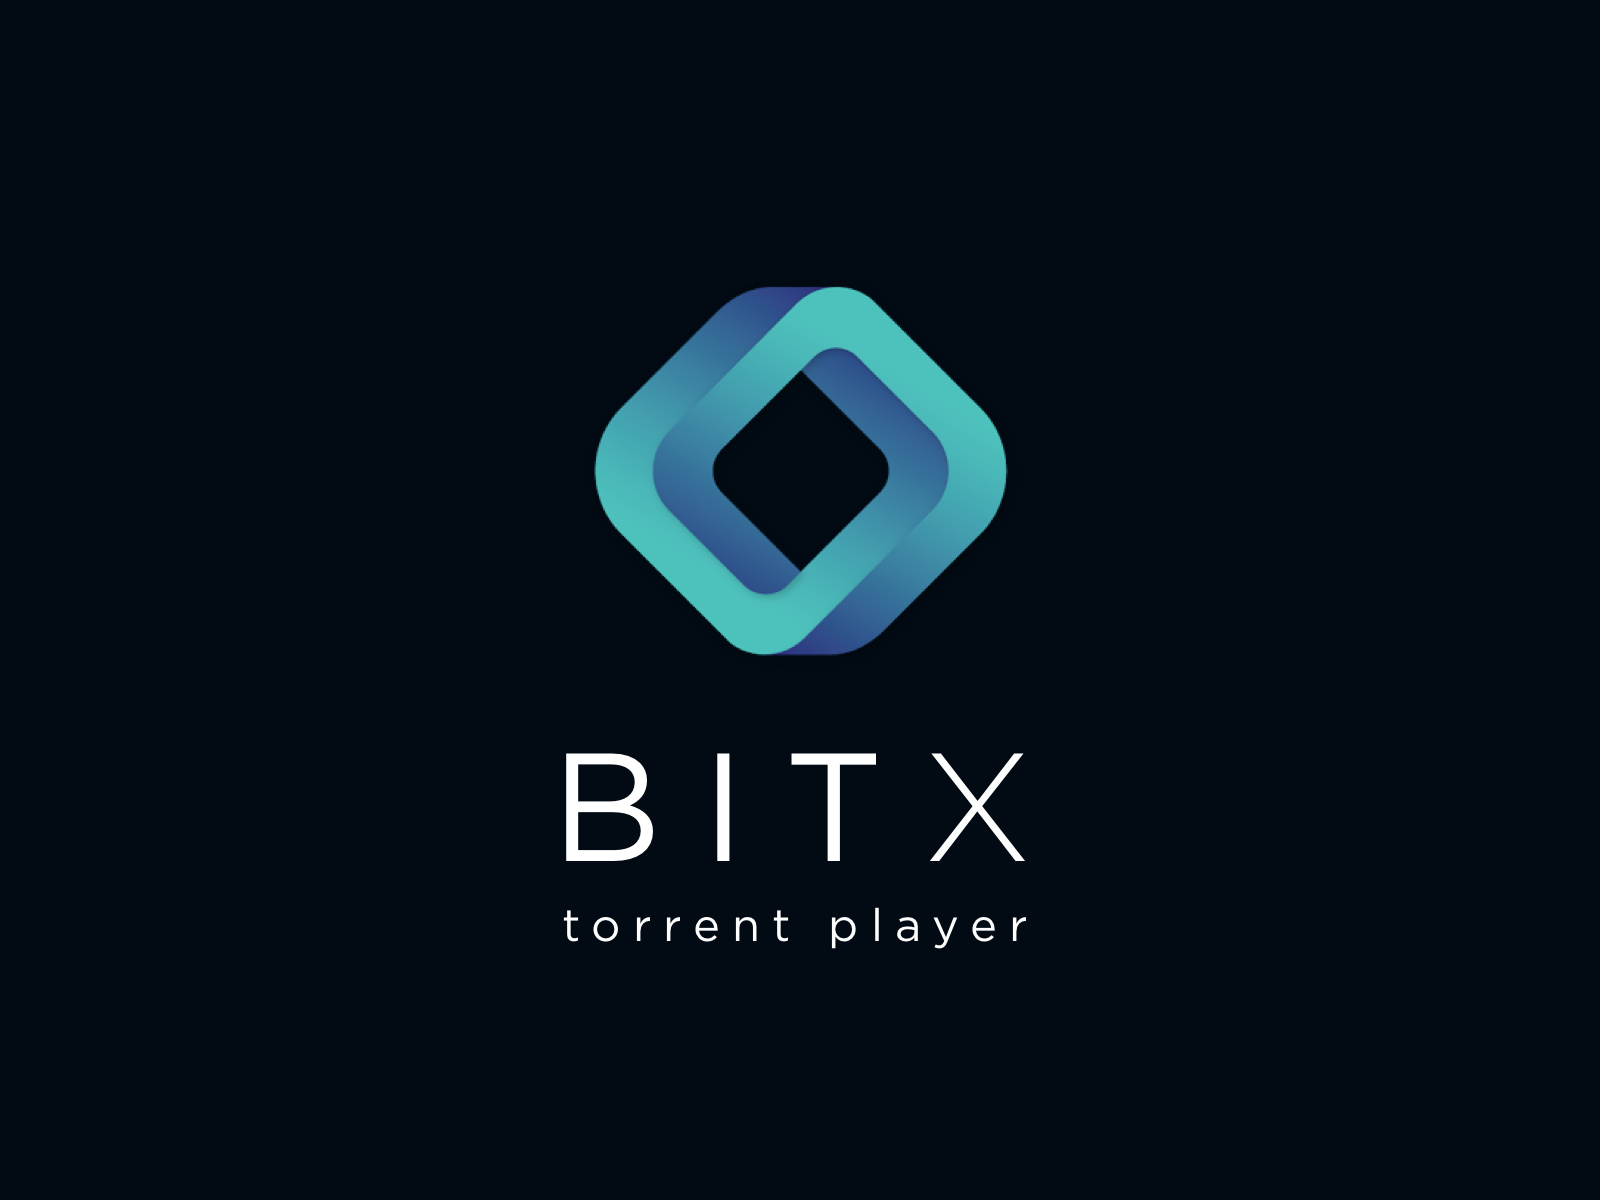 Торрент-відеоплеєр BitX